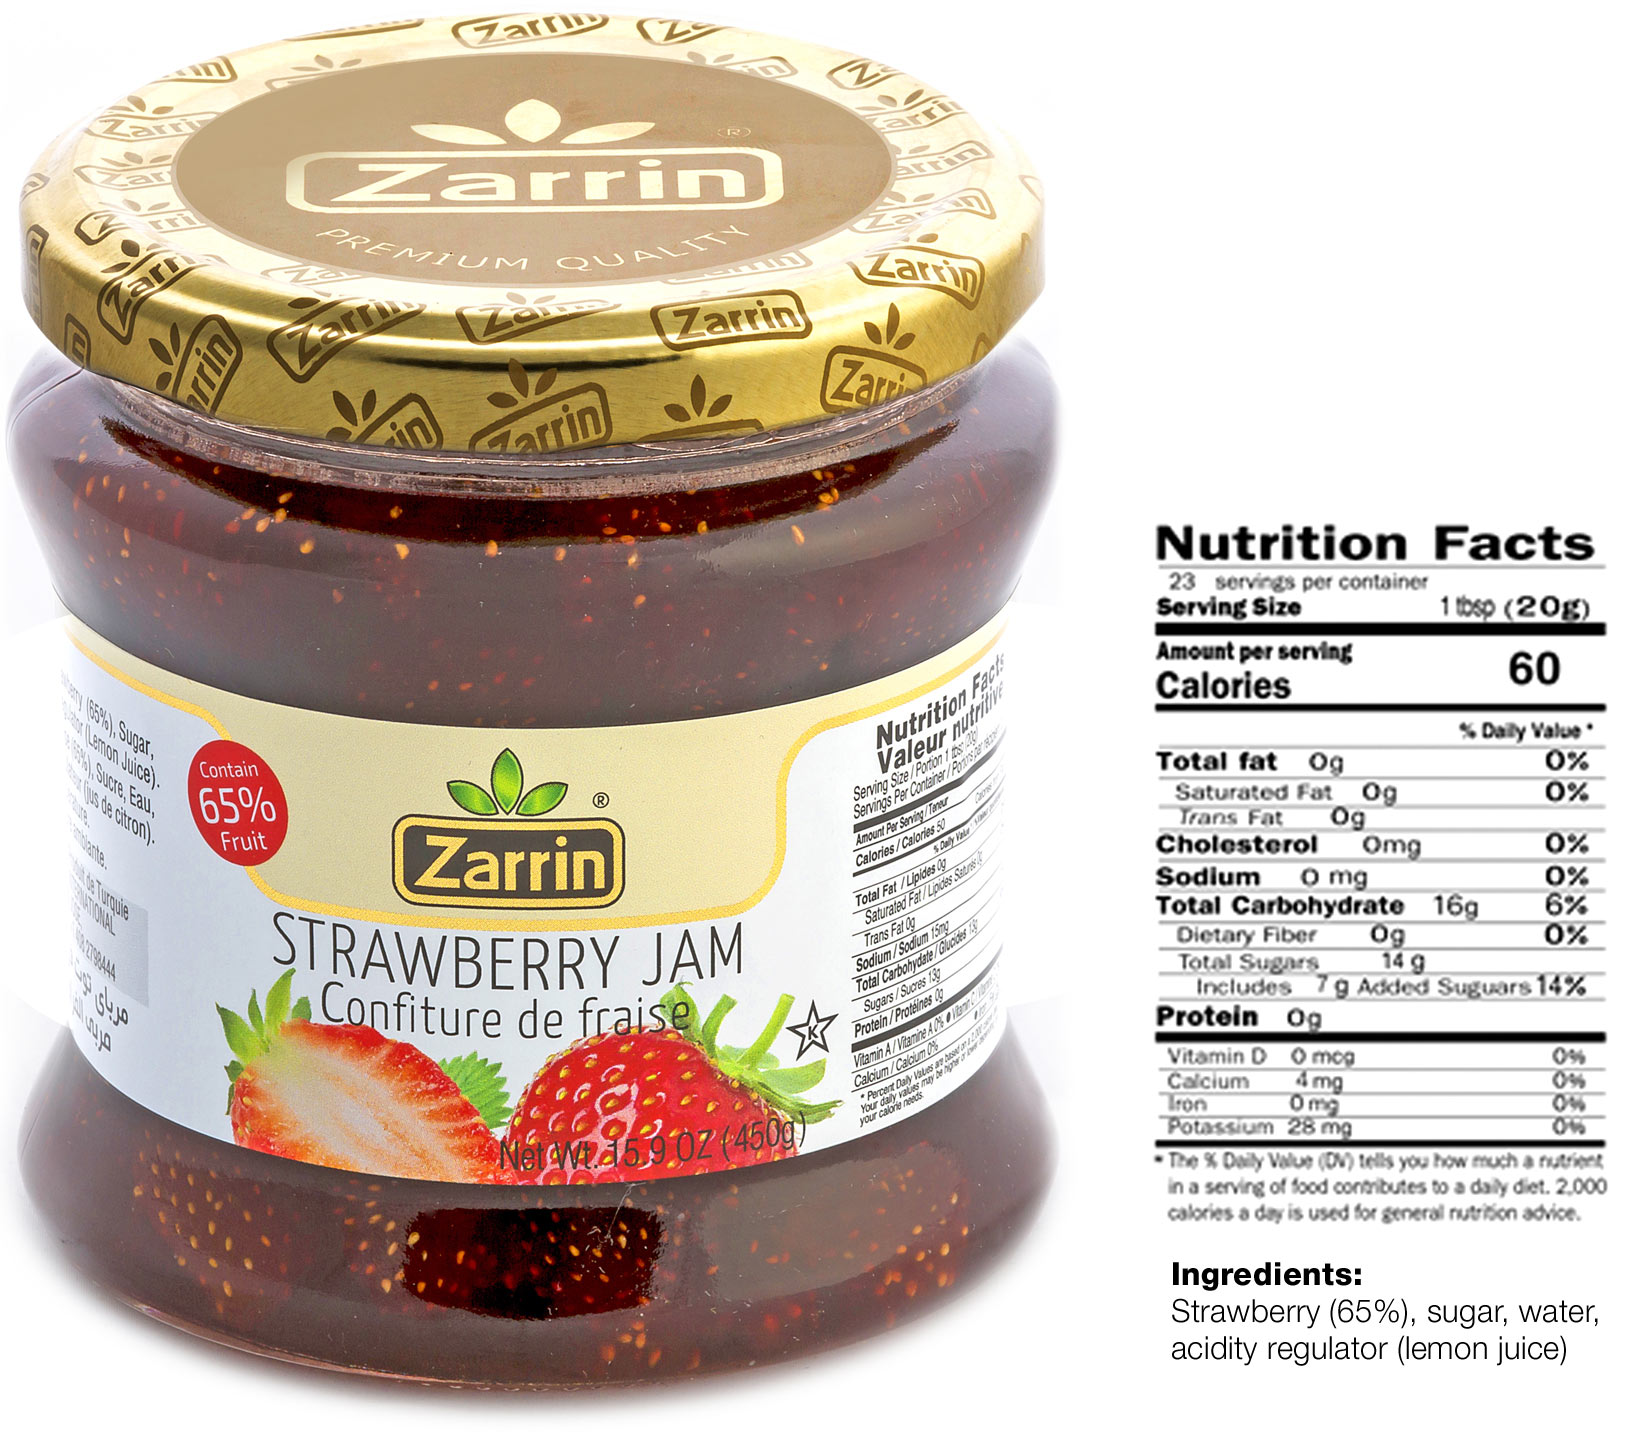 Zarrin strawberry jam in glass jar with 15.9 oz.